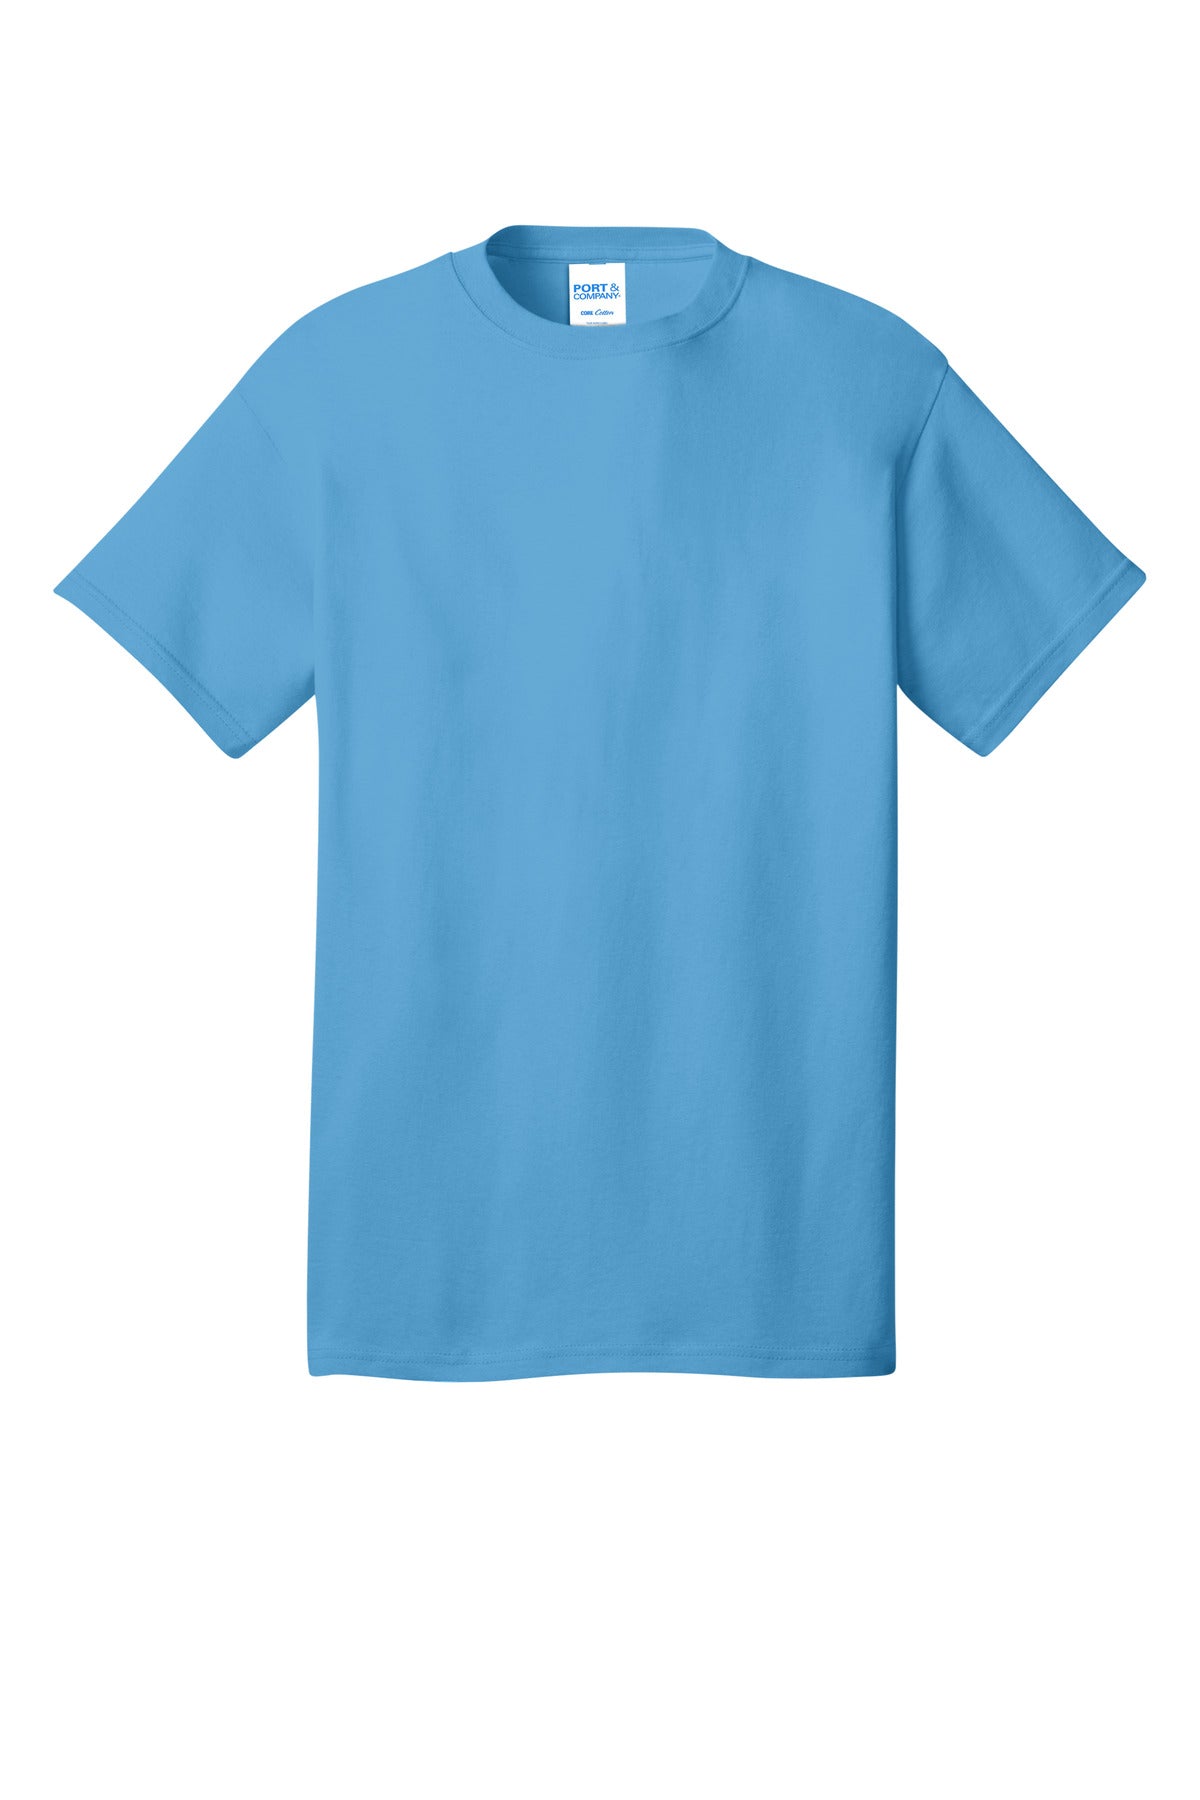 Port & Company Core Cotton DTG Tee PC54DTG - BT Imprintables Shirts